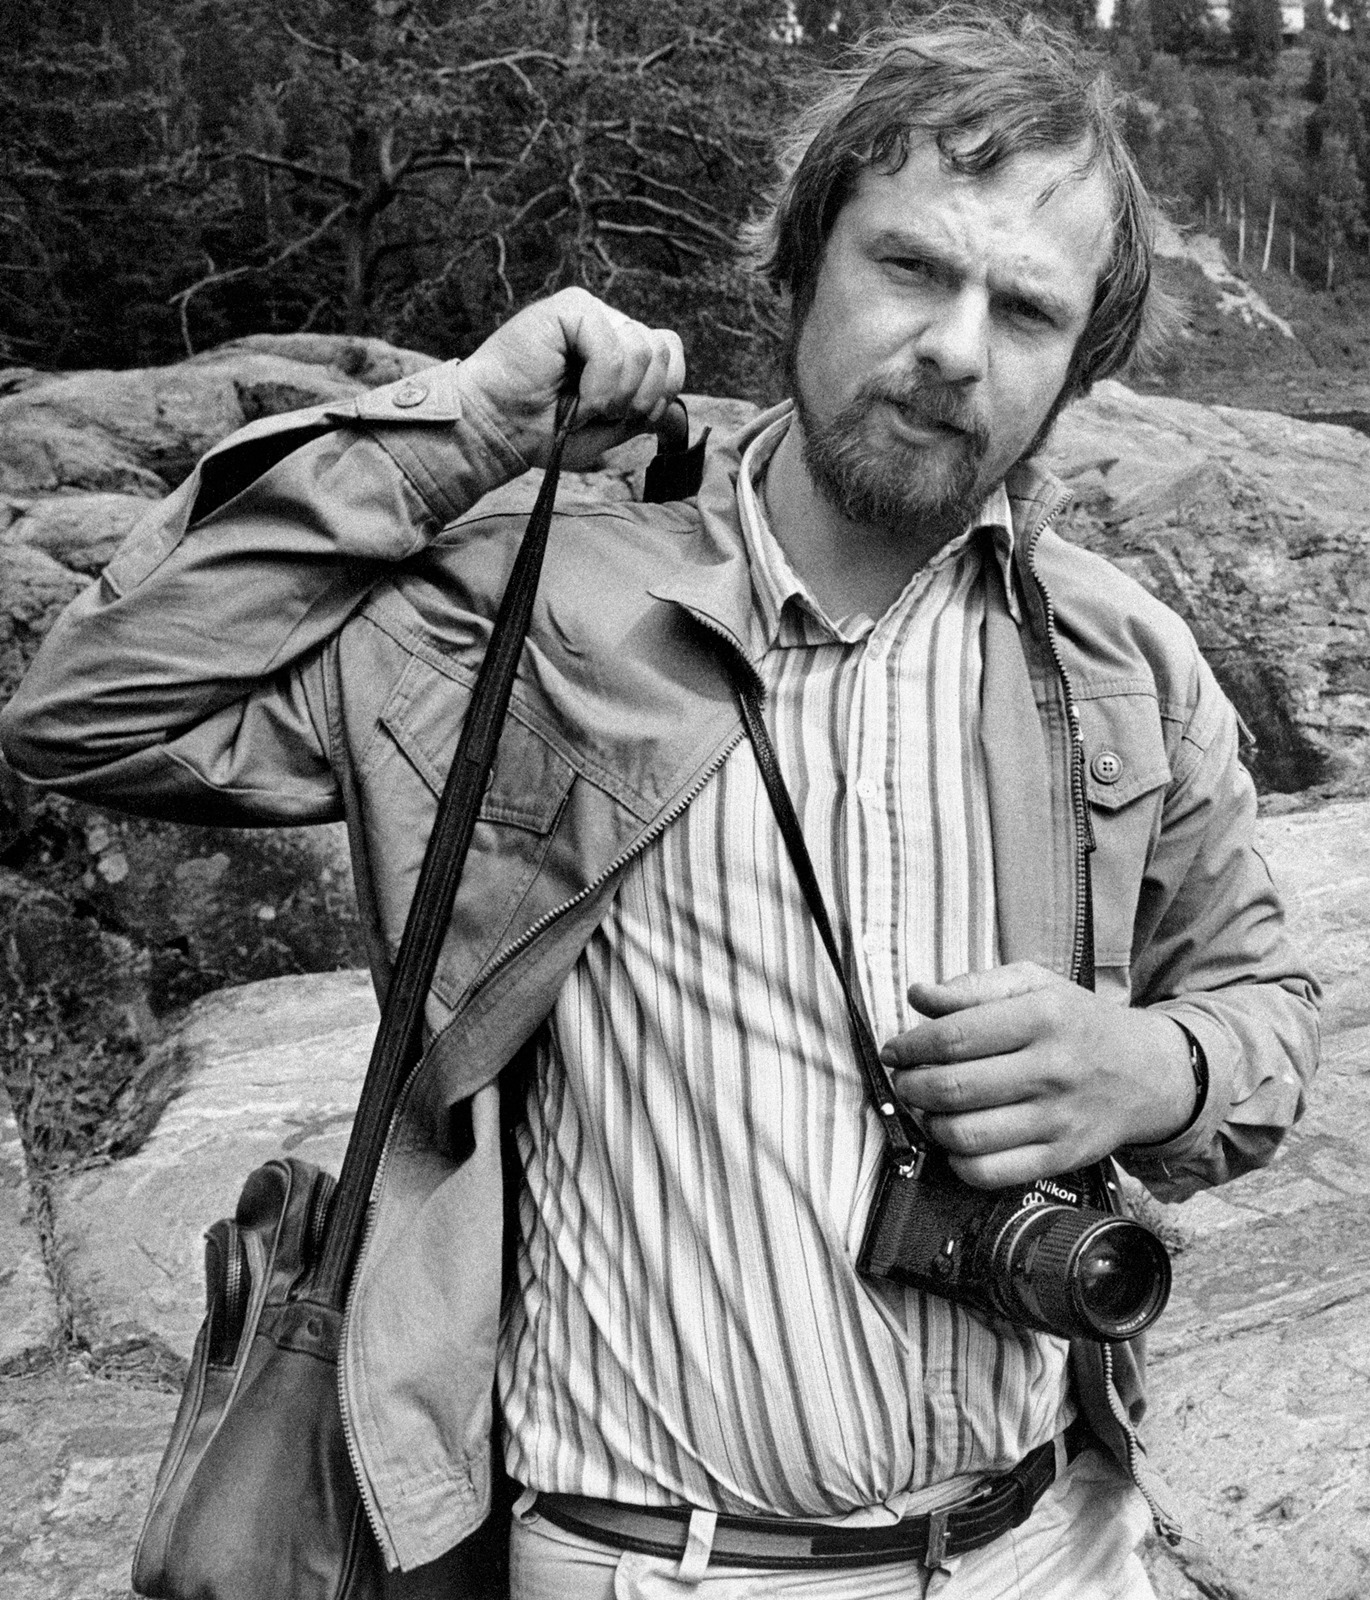 Chris Niedenthal, Szwecja, lipiec 1980. Fot. Karolina Niedenthal, © Chris Niedenthal